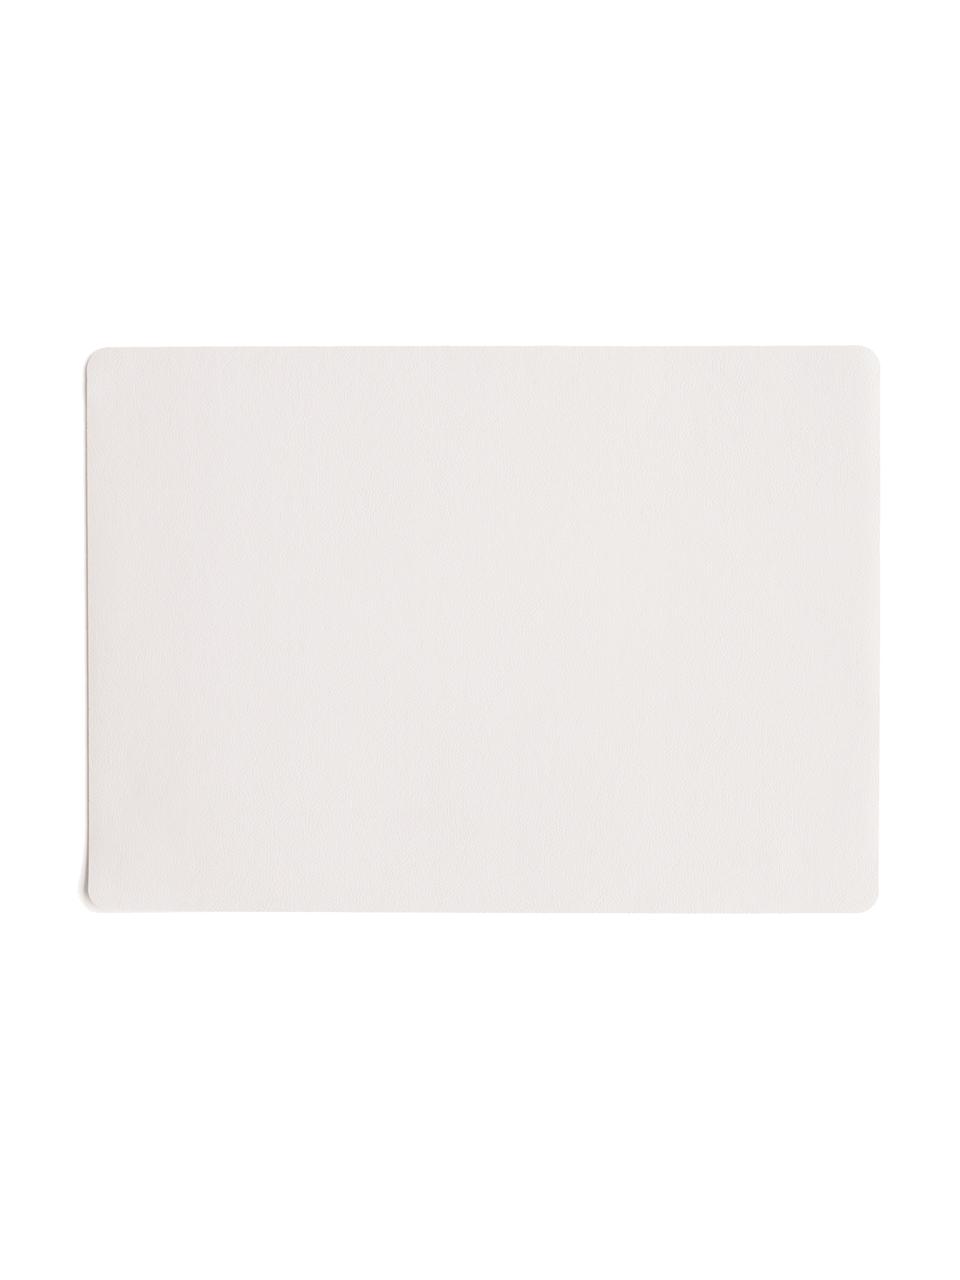 Kunstleder-Tischsets Pik, 2 Stück, Kunstleder (PVC), Weiß, B 33 x L 46 cm